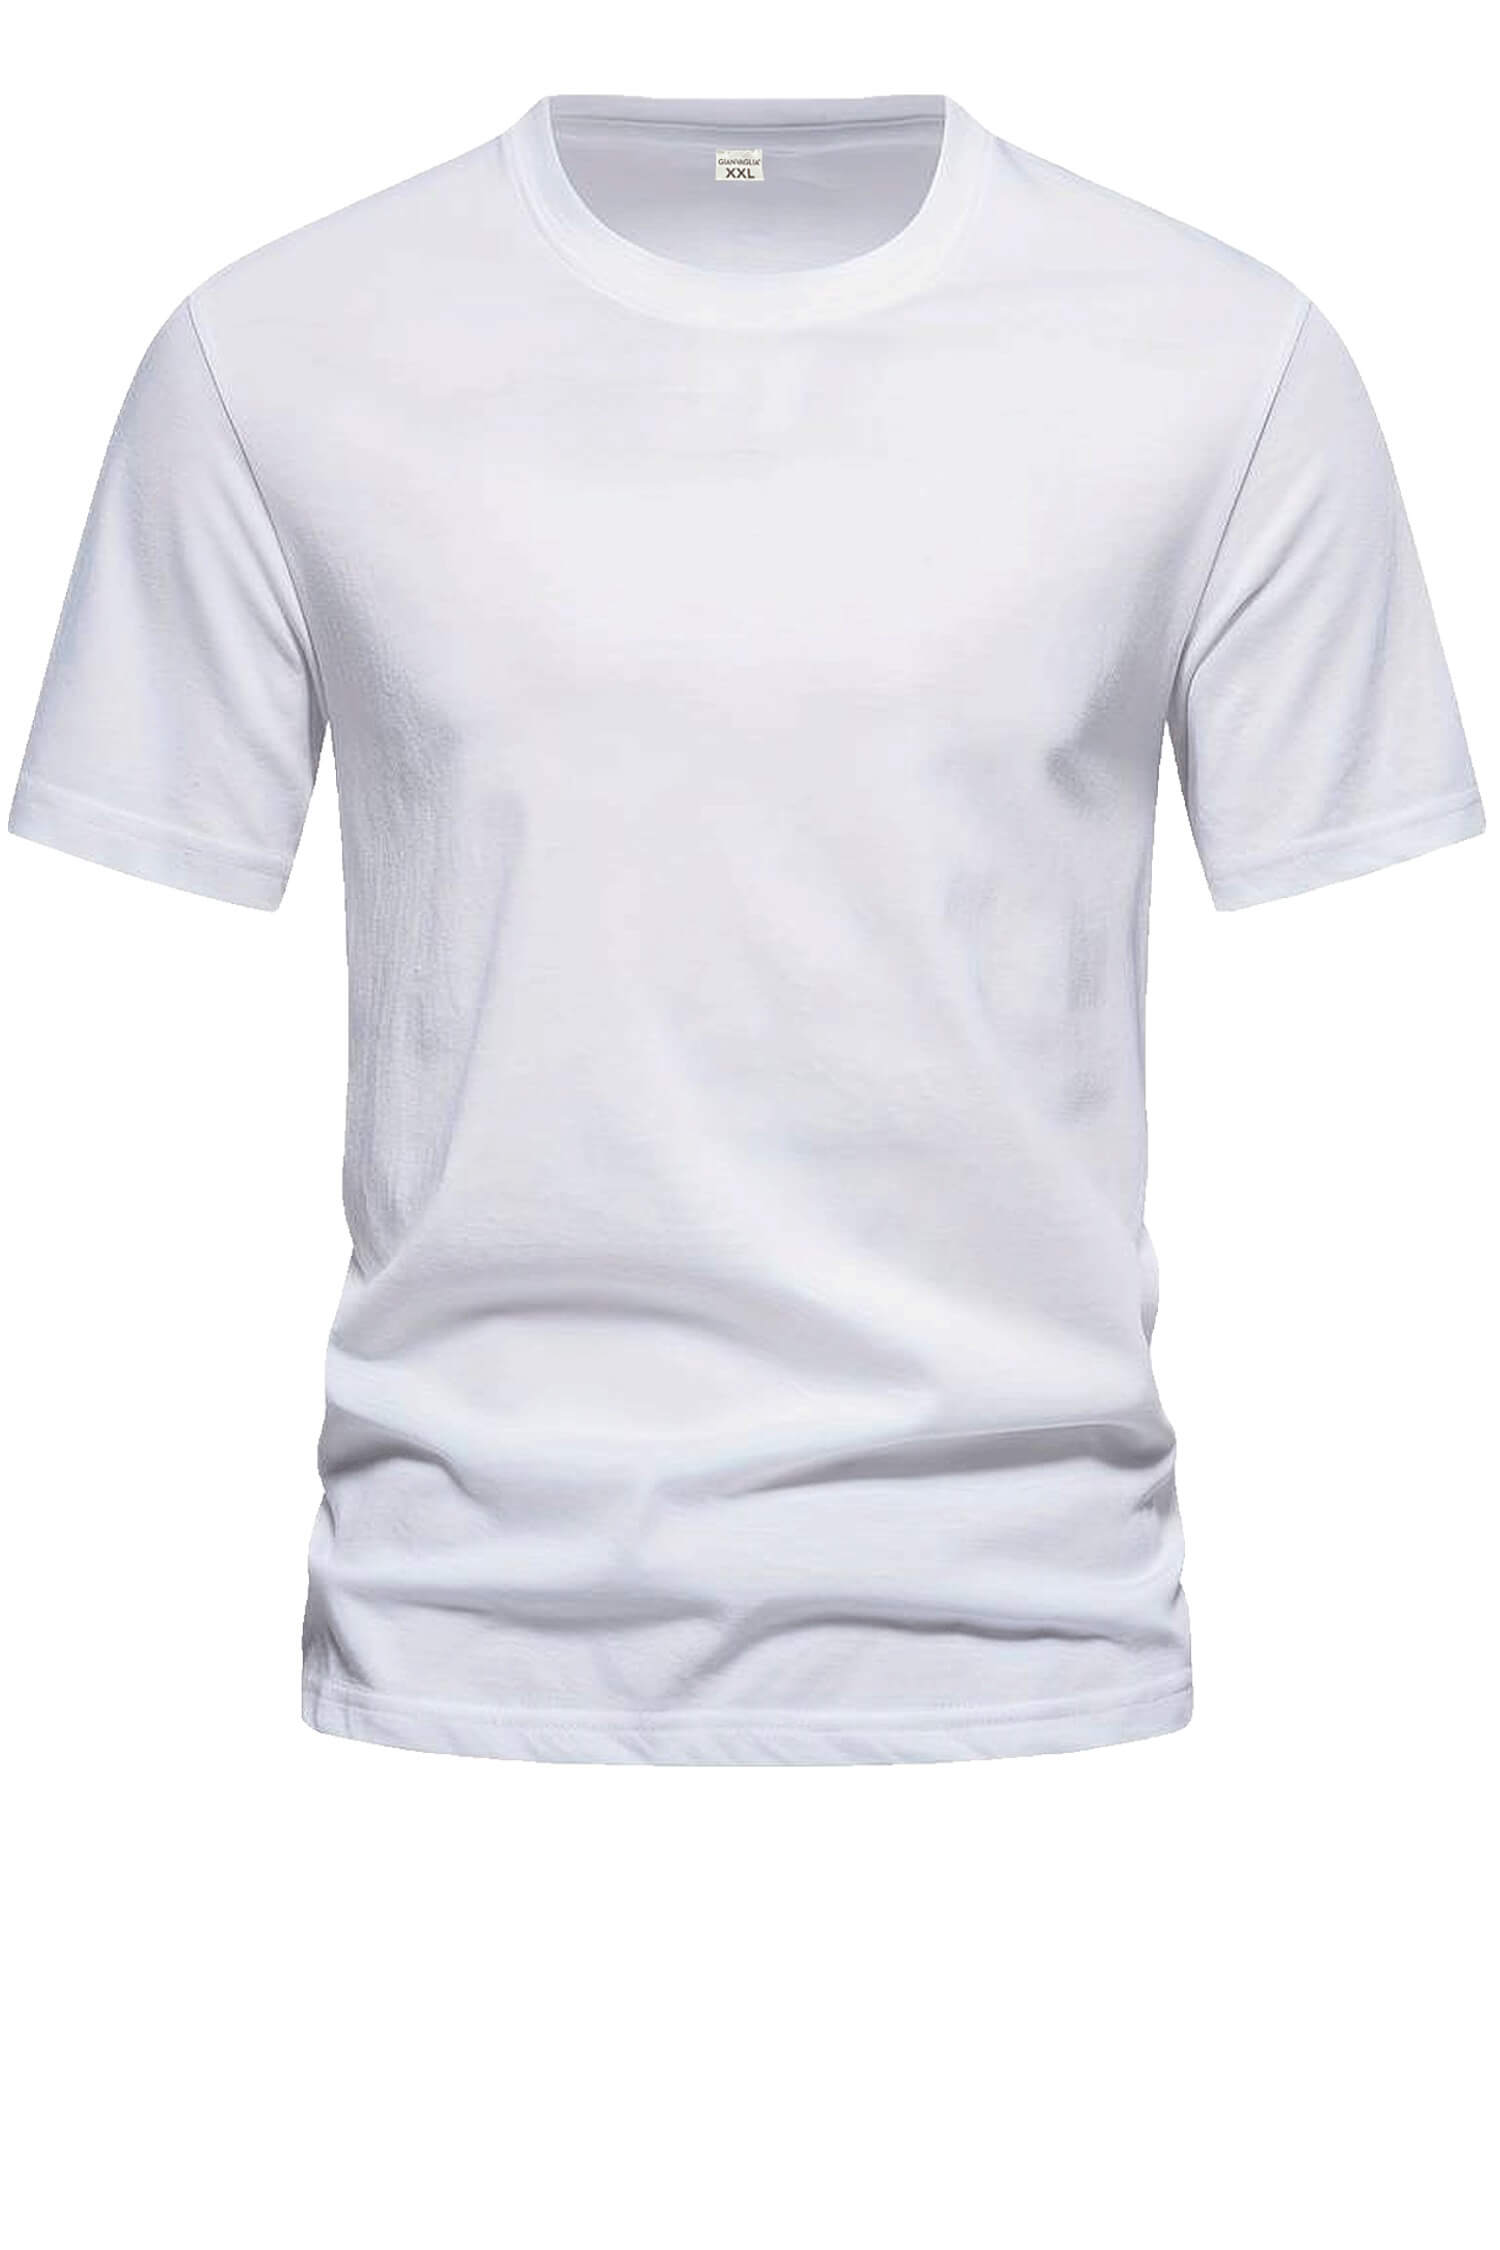 Bořek pánské klasické tričko TS-1006 bílá XL